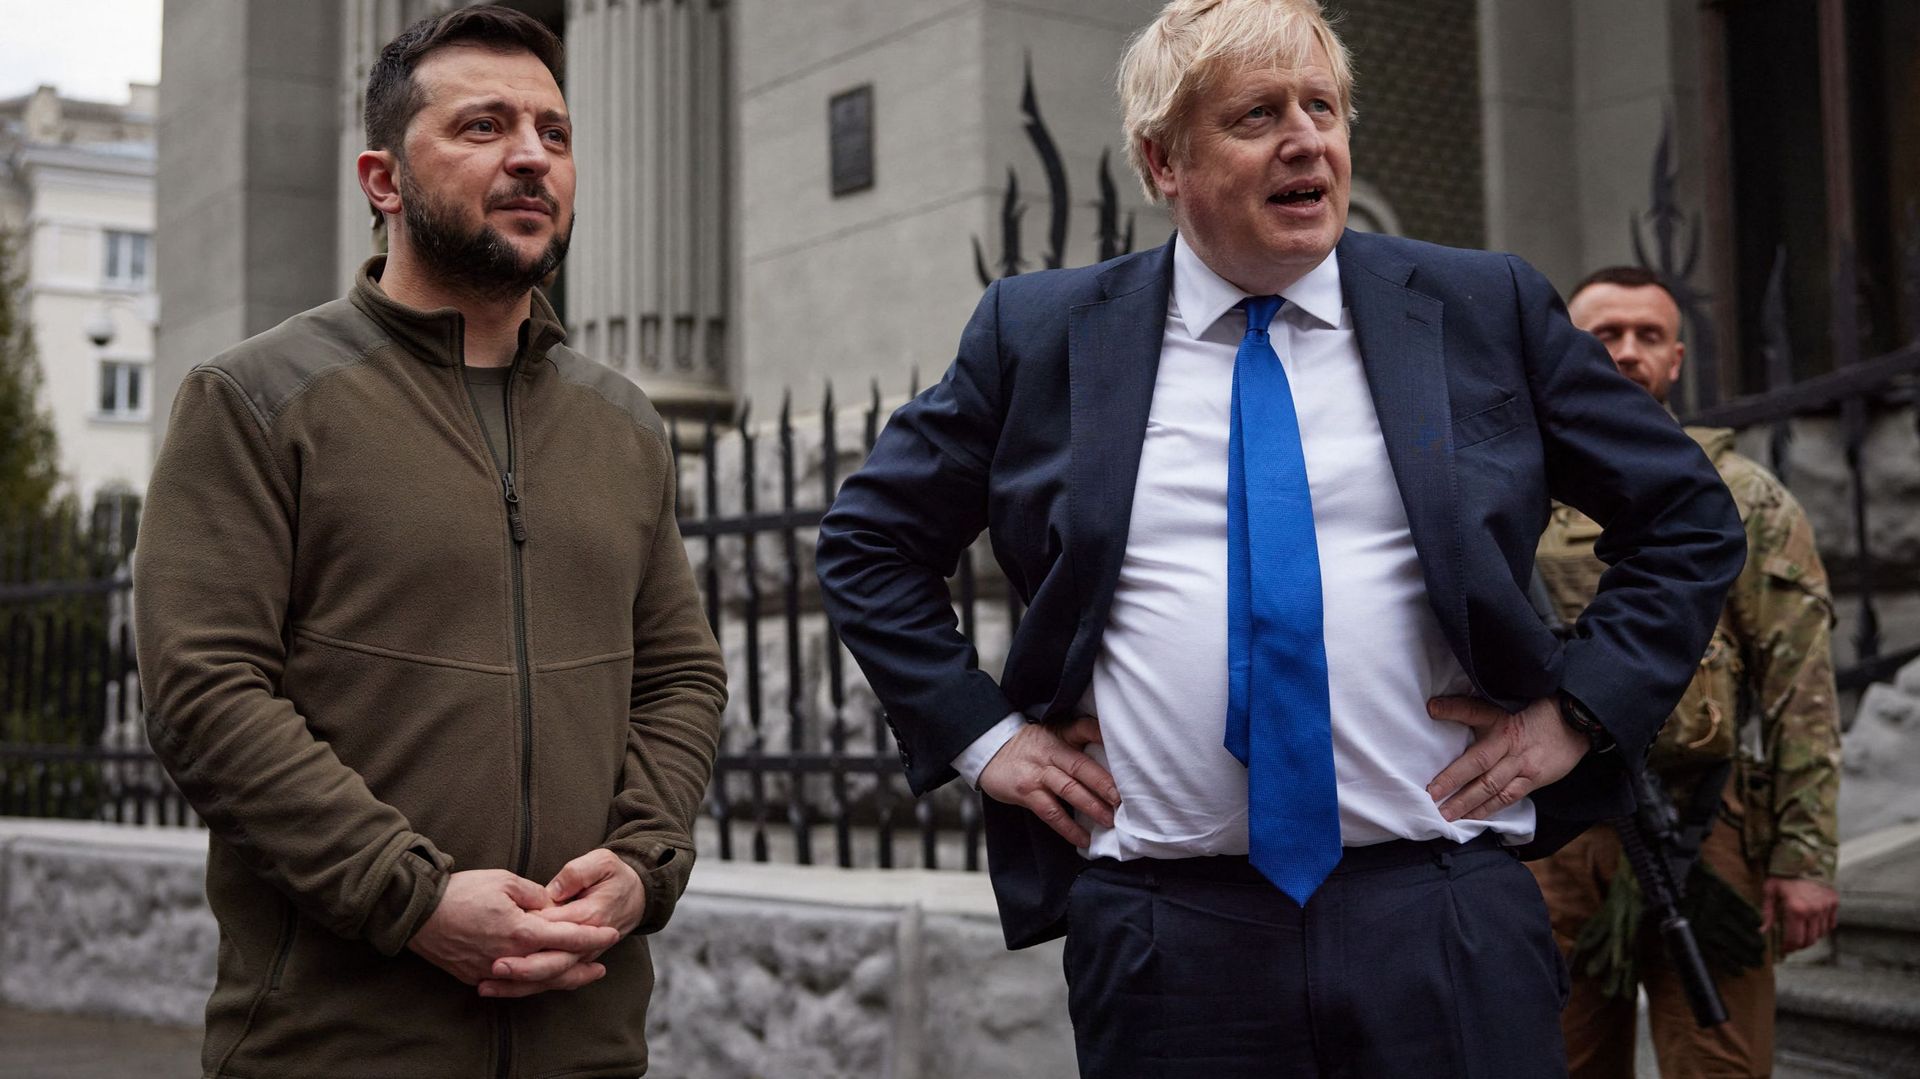 Une photo publiée par le service de presse de la présidence ukrainienne montre le Premier ministre britannique Boris Johnson (à droite) et le président ukrainien Volodymyr Zelensky (à gauche) discutant après avoir marché dans le centre de Kiev, le 9 avril